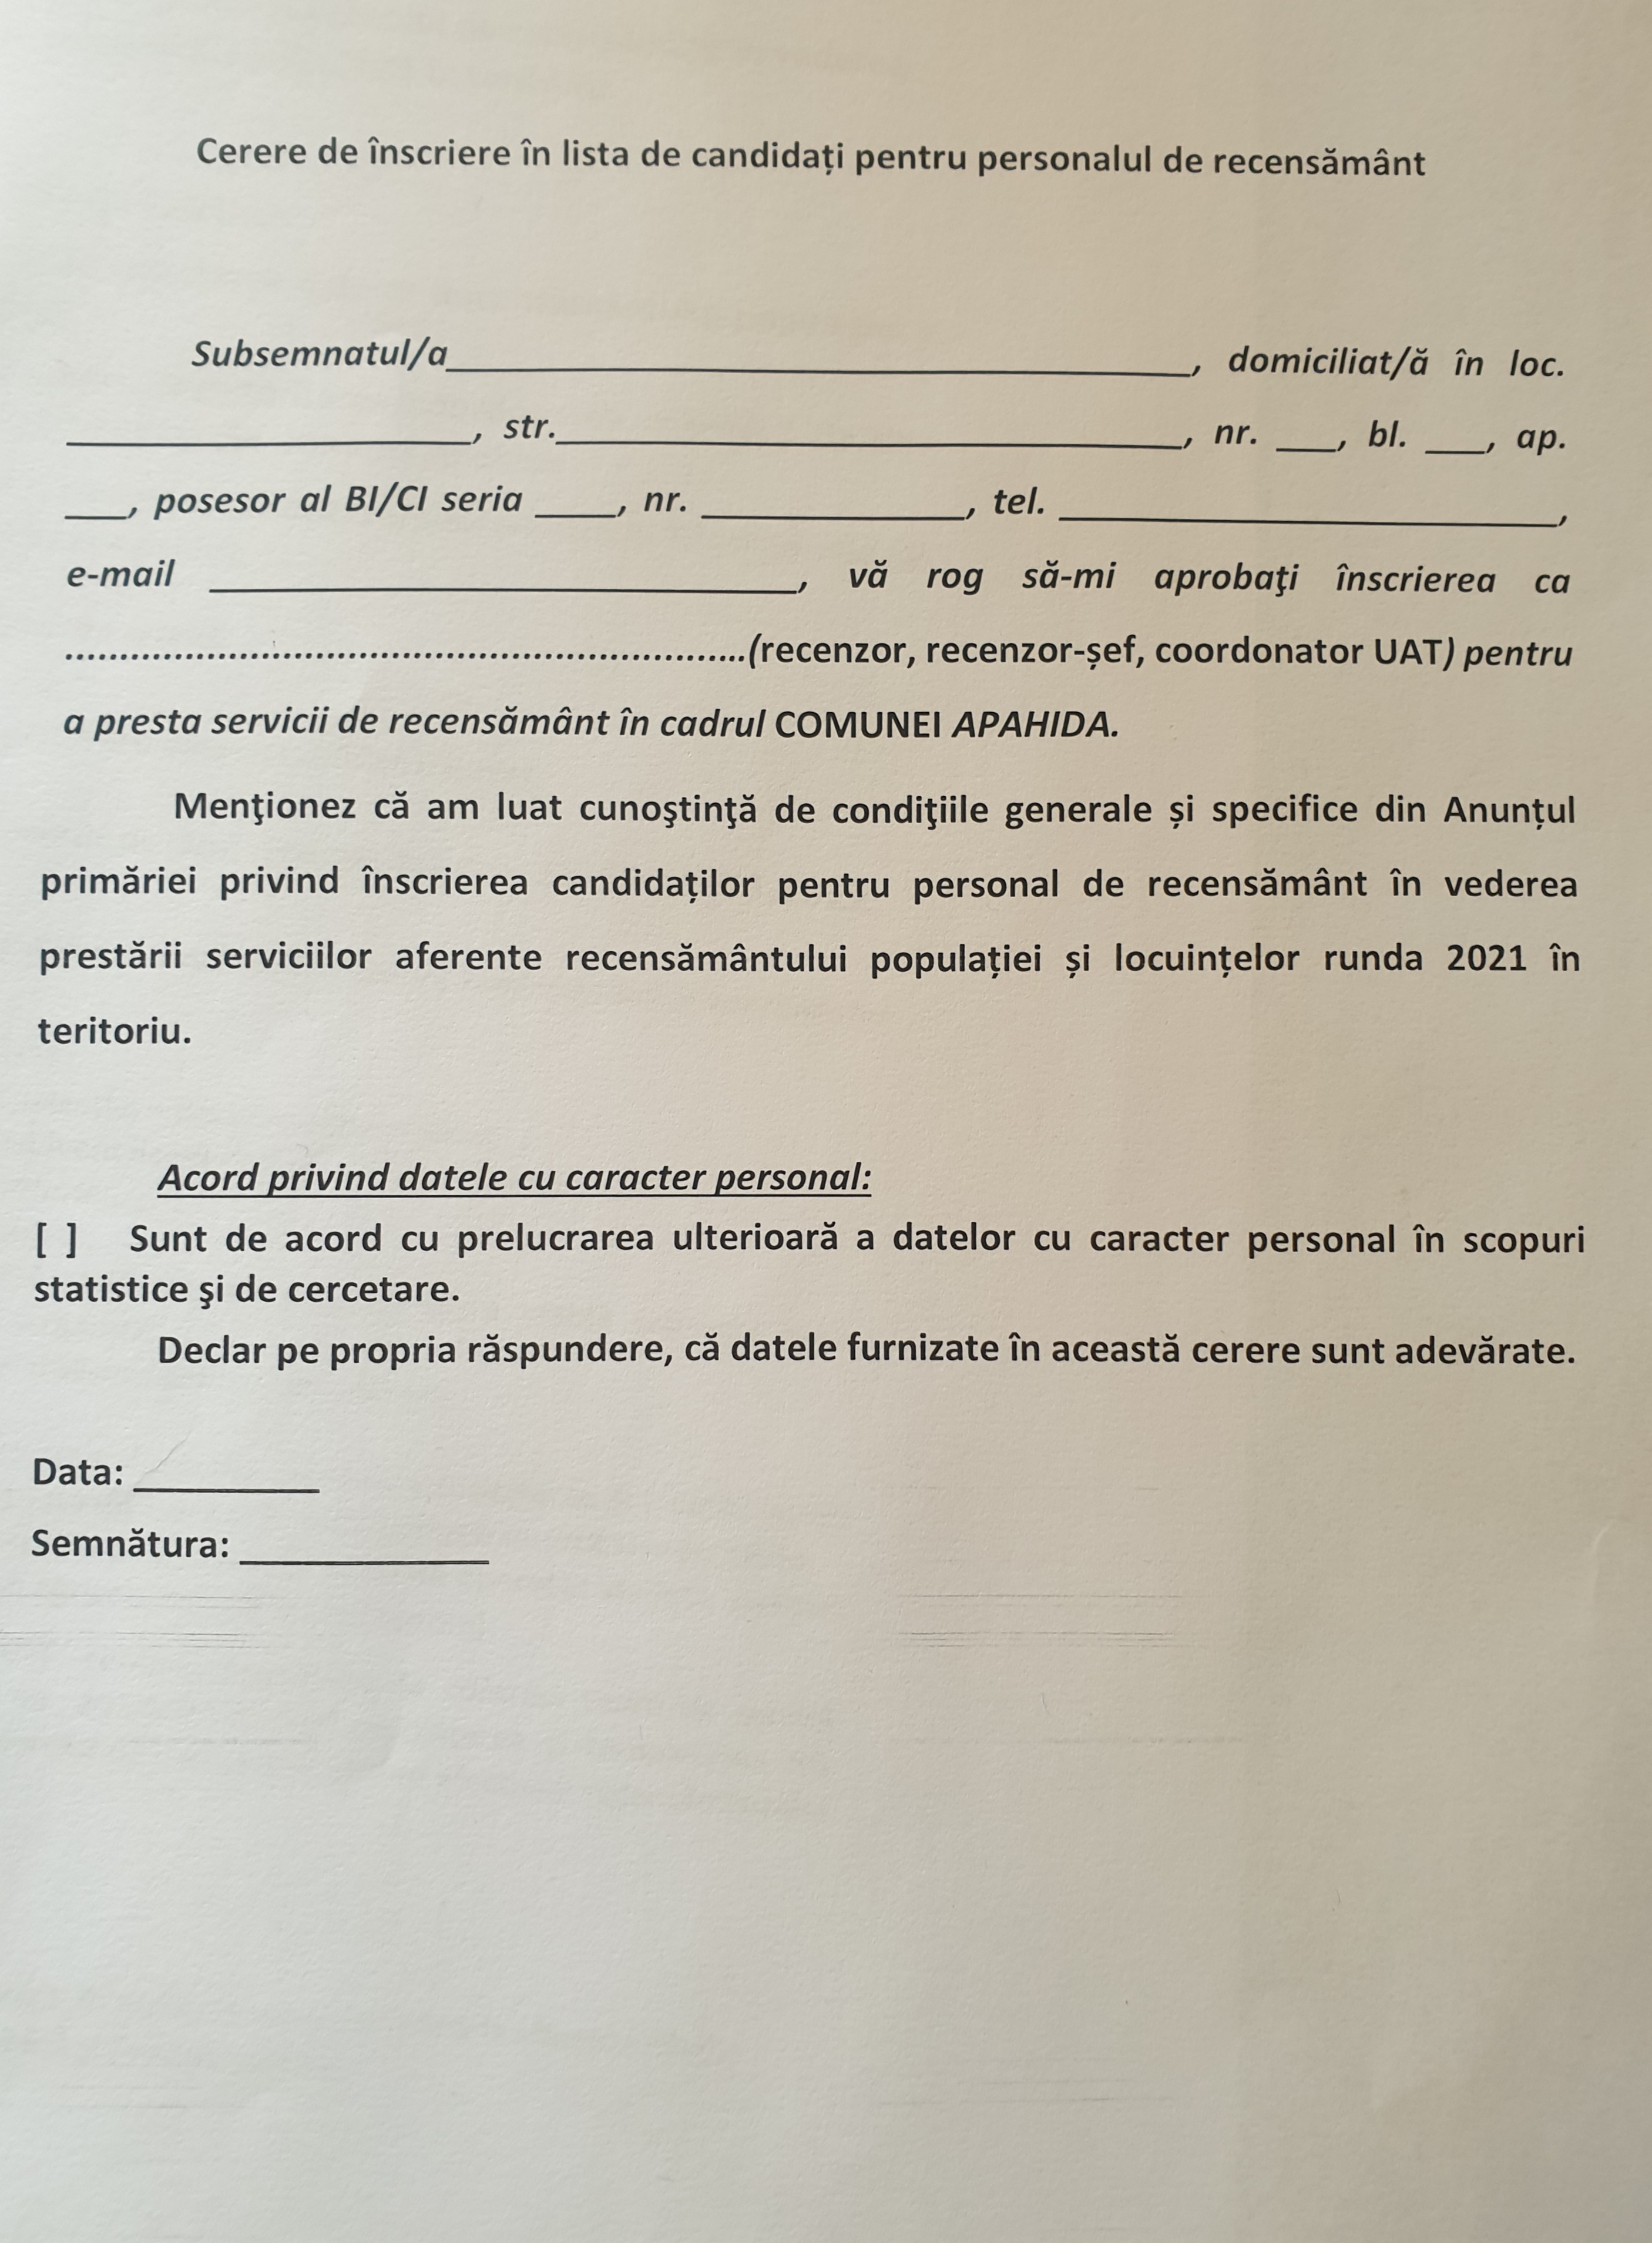 Proportional recipe Assumption Primaria Comunei Apahida